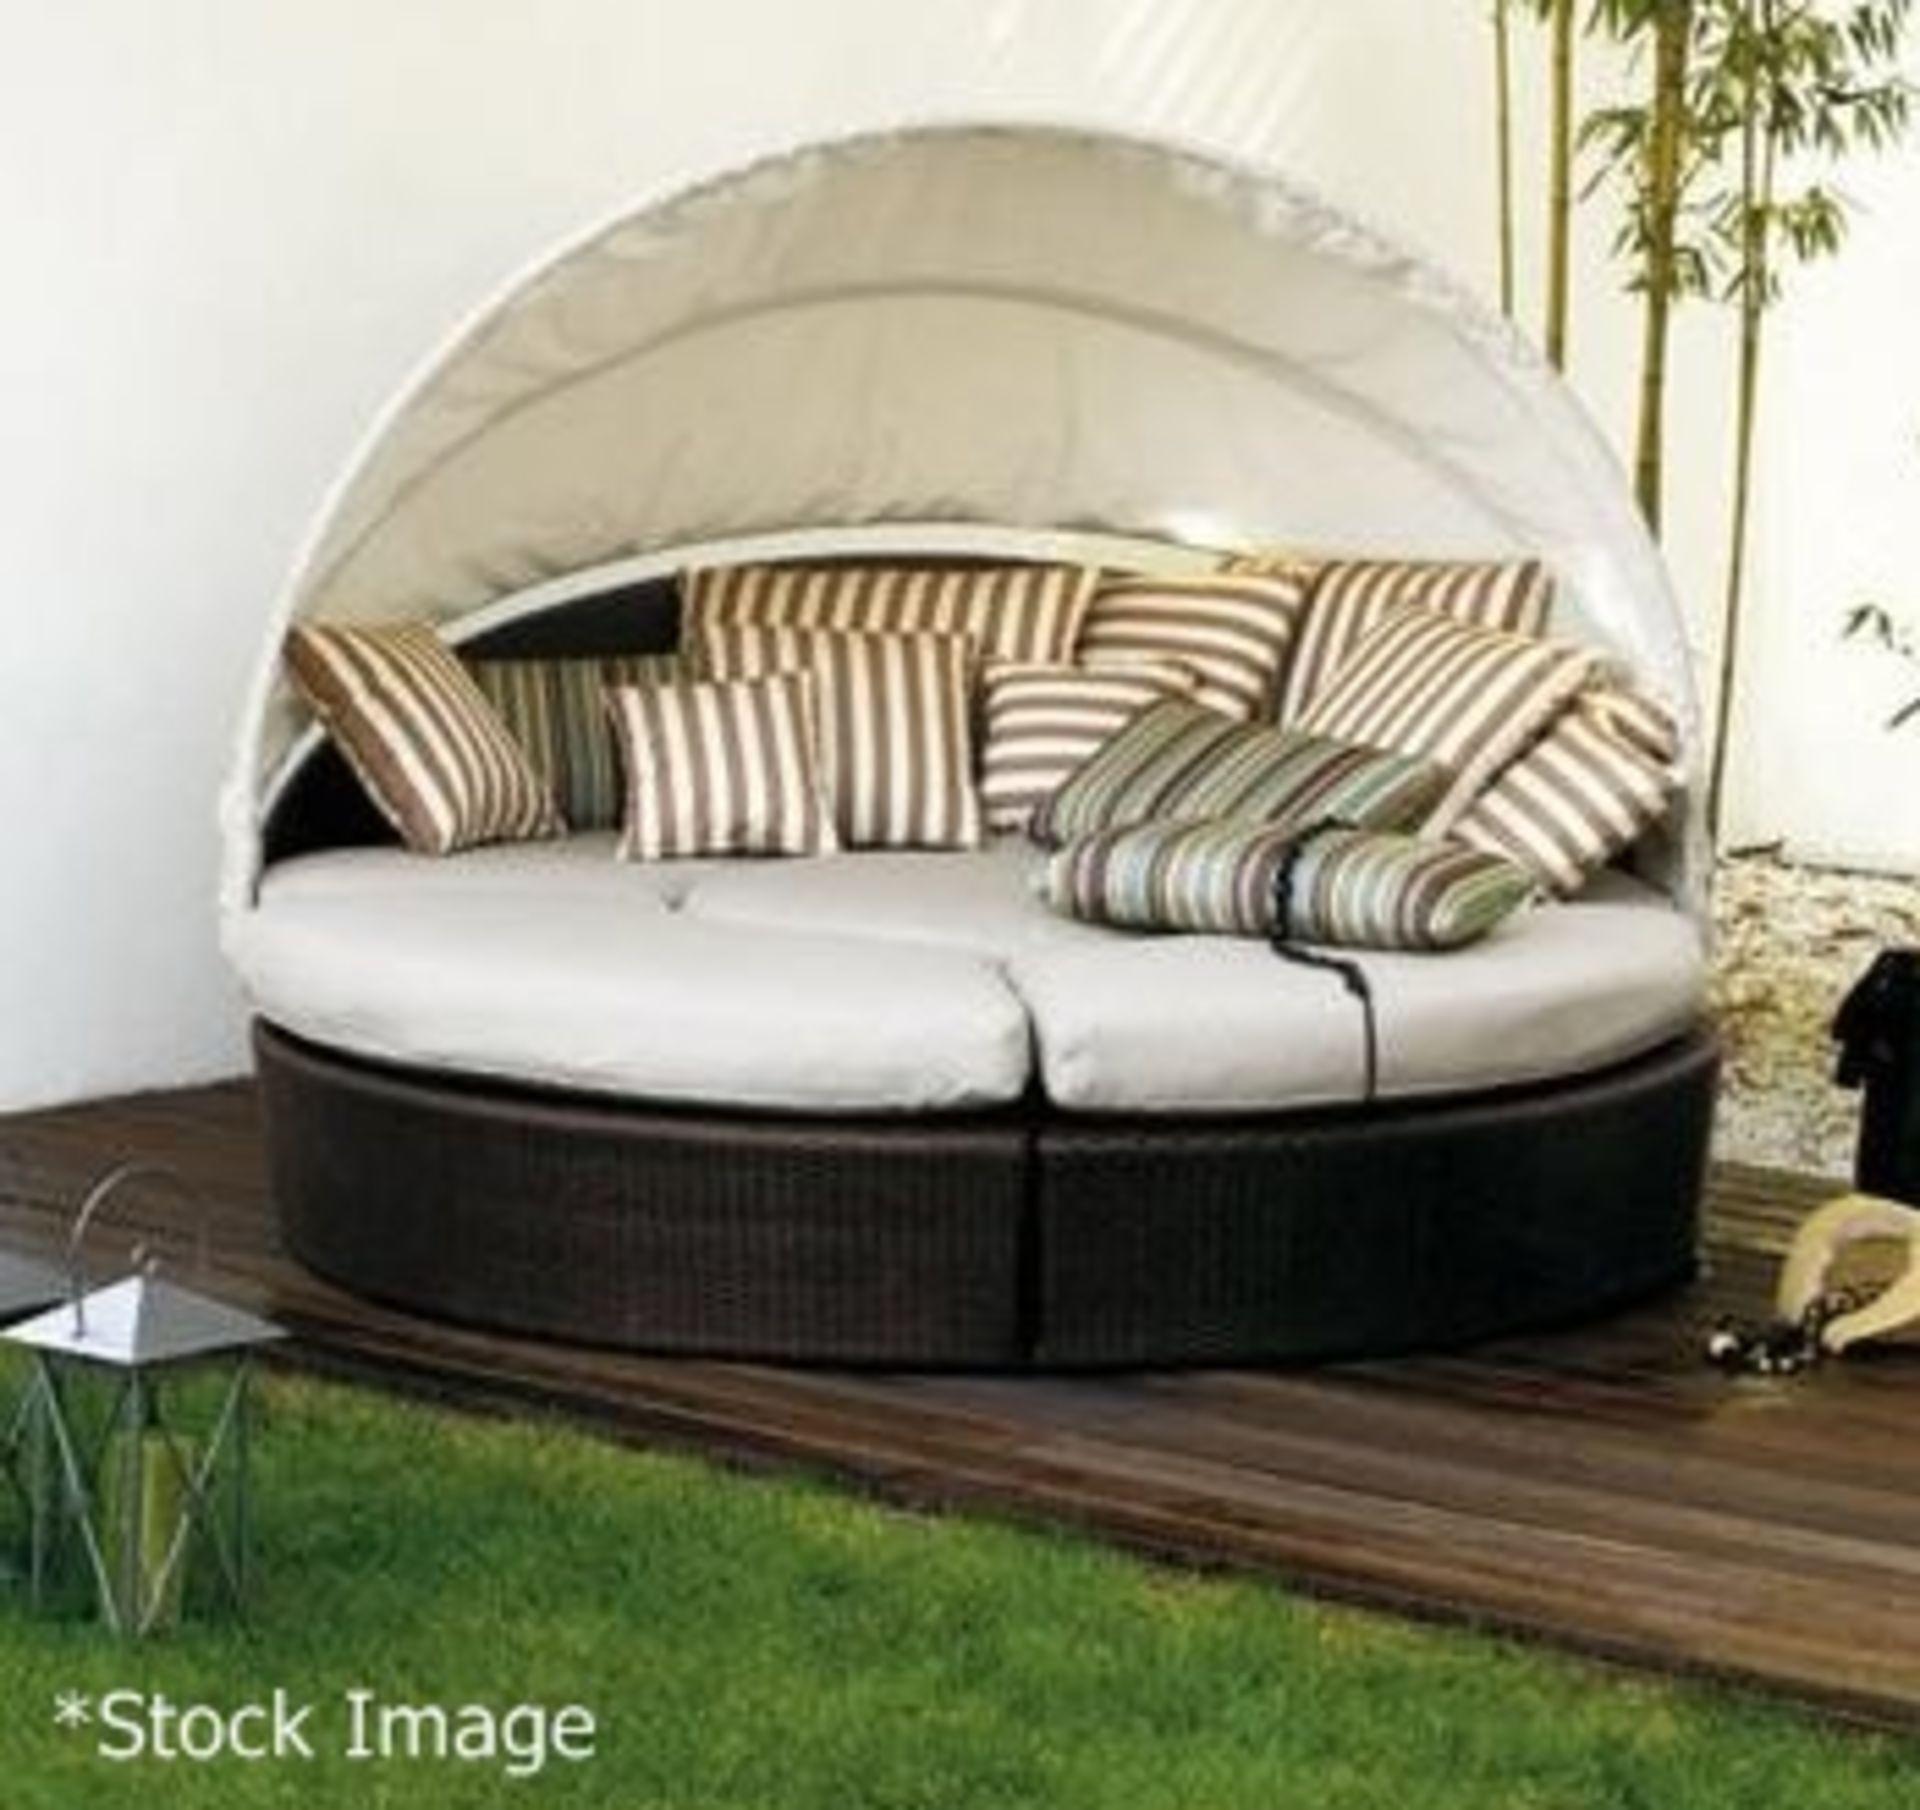 1 x VARASCHIN 'Arena' Circular Outdoor Sofa With Canopy - Original RRP £2,700